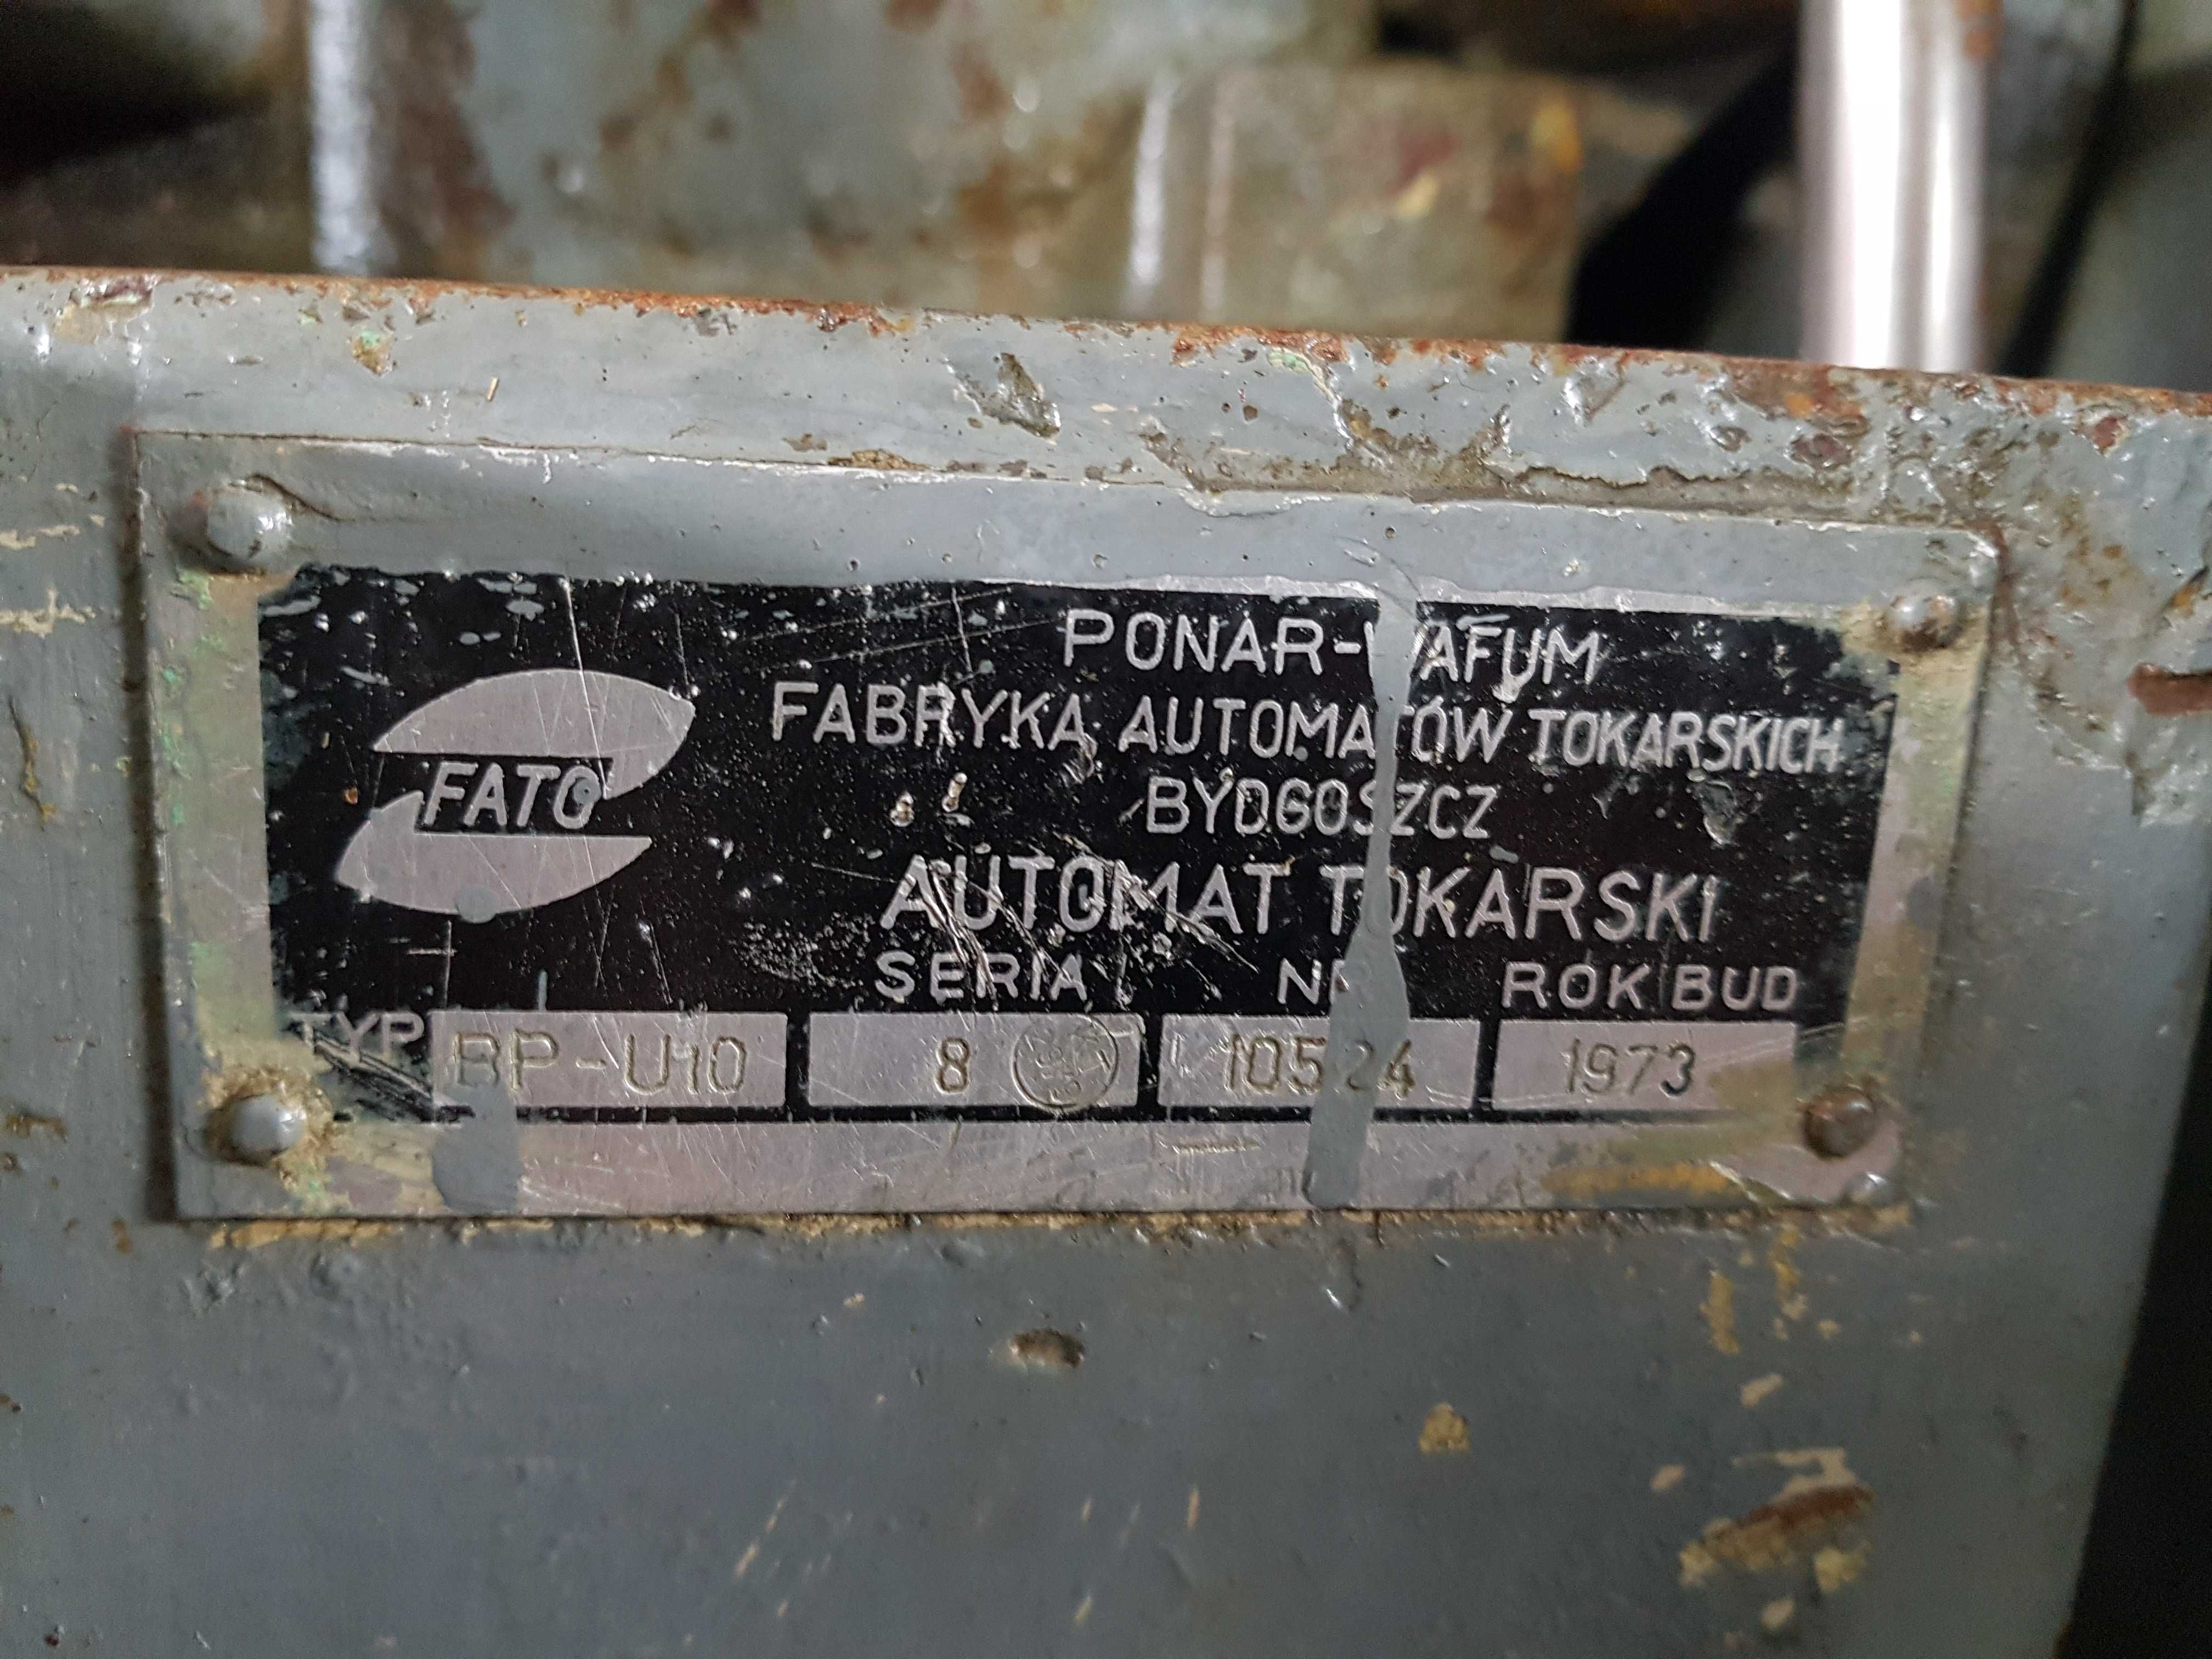 Automat tokarski do metalu (wzdłużny) z podajnikiem BP-U10